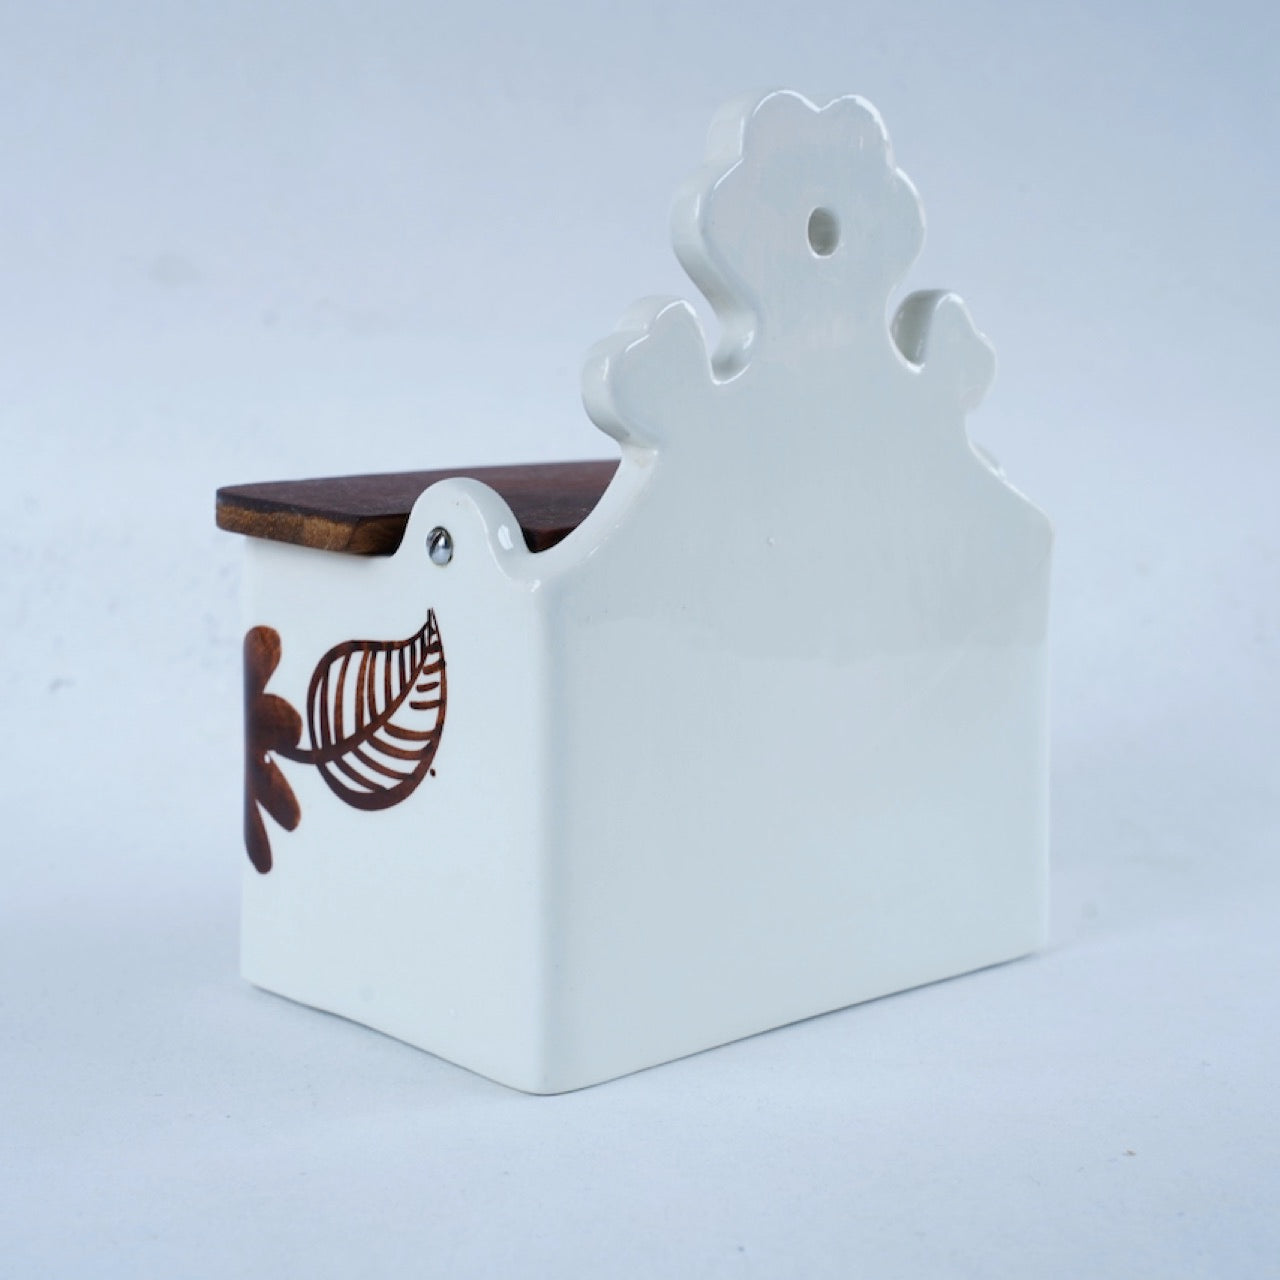 訳あり品 アラビア（ARABIA）アトリエGOG（Atelje GOG）茶色のソルトボックス 食品保存容器 ARABIA   